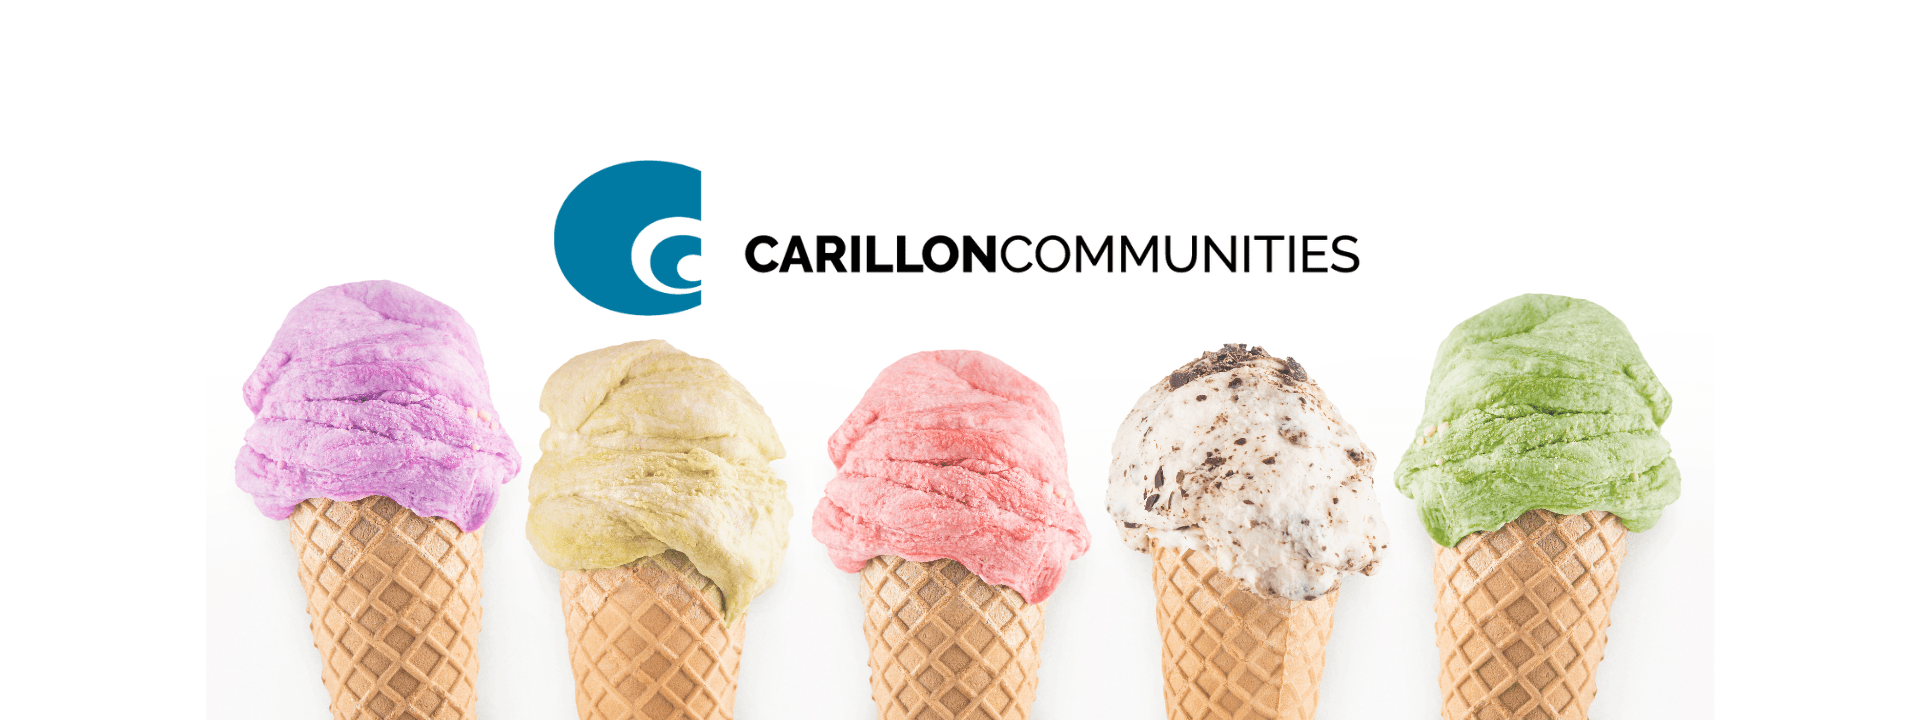 Carillon Communities logo and ice cream cones